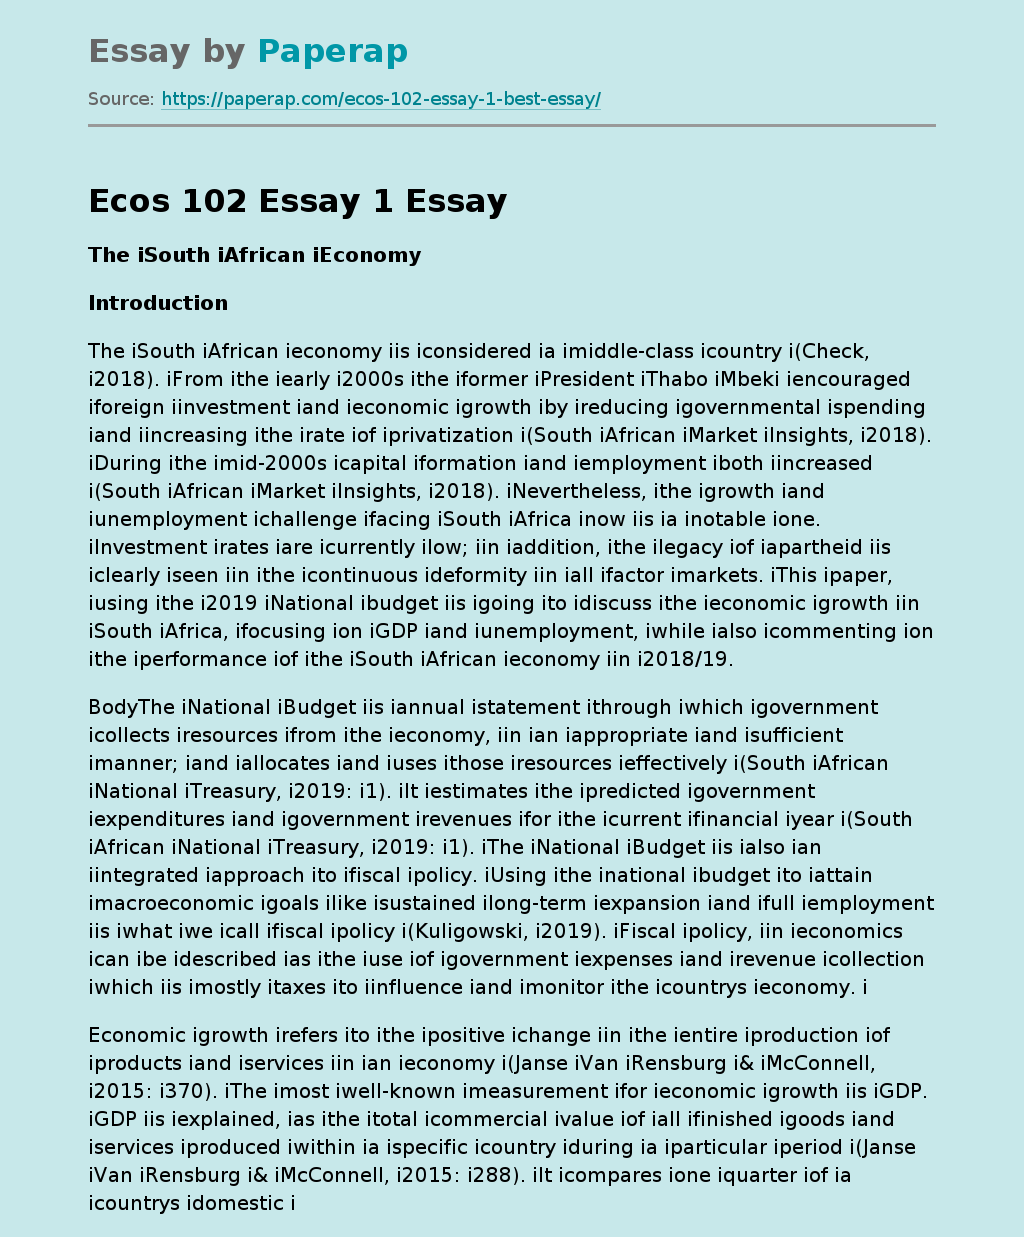 Ecos 102 Essay 1